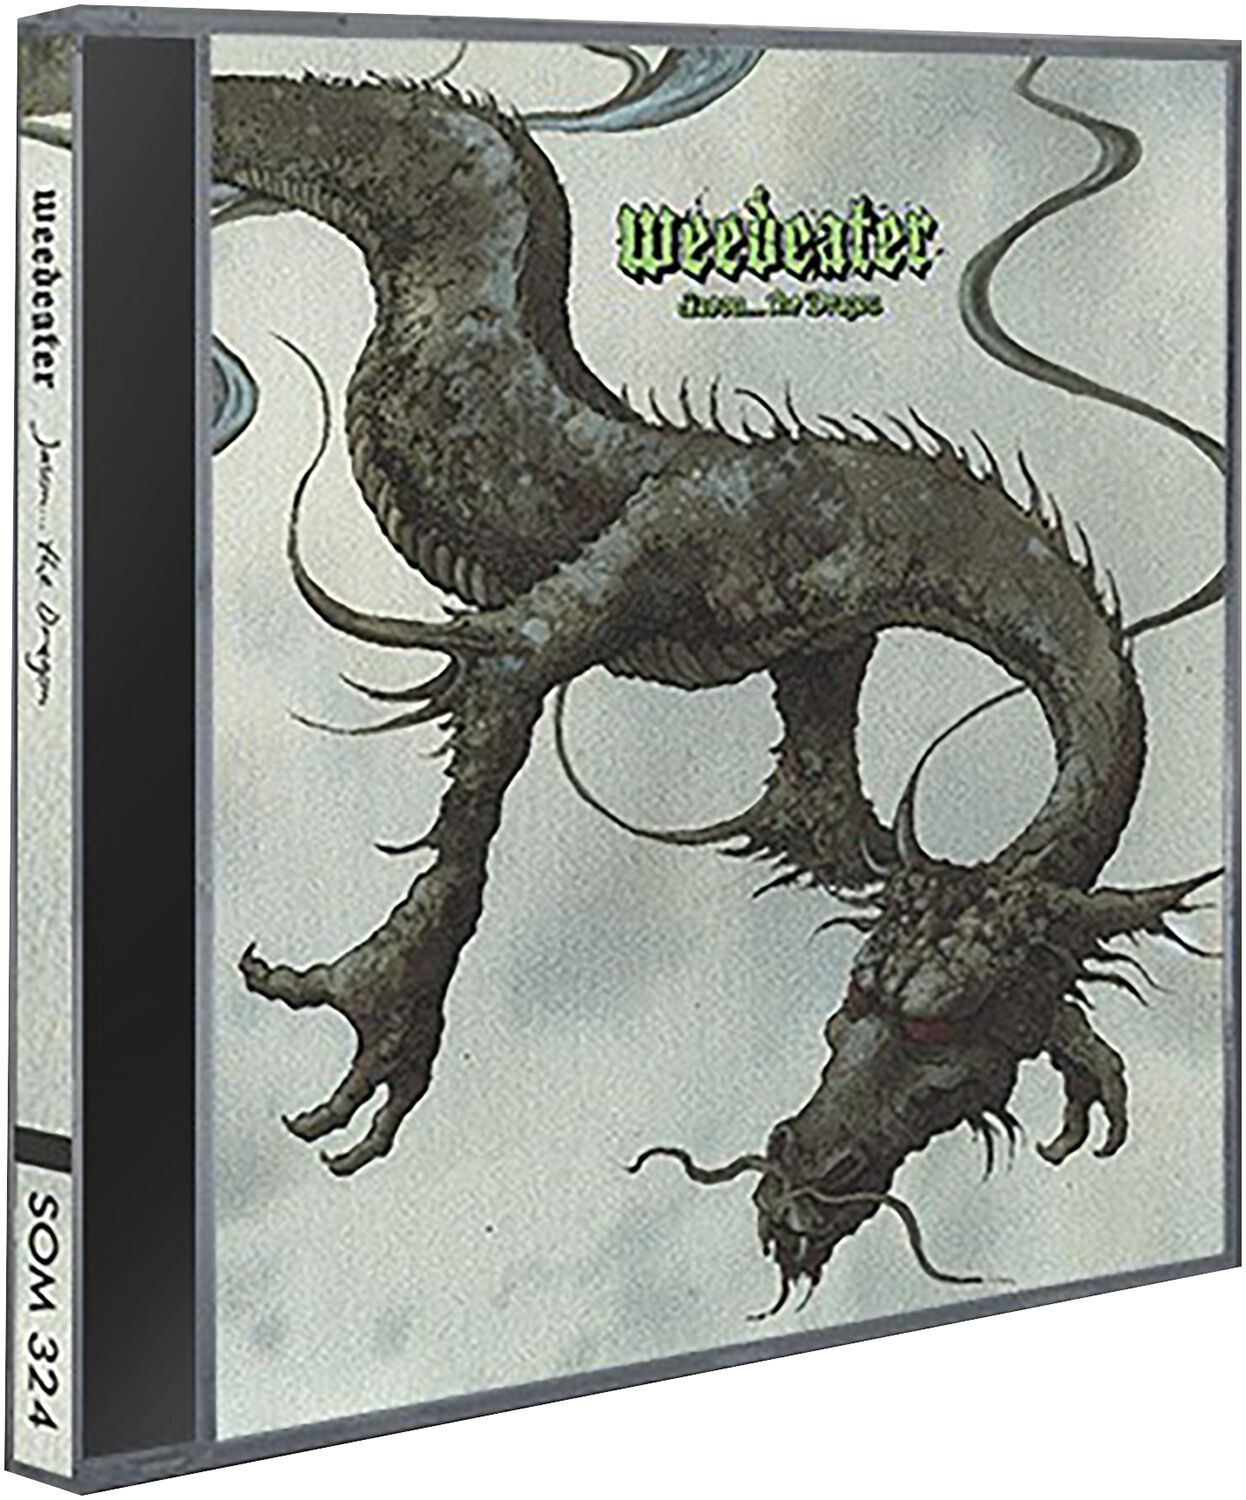 Jason...The dragon von Weedeater - CD (Jewelcase)